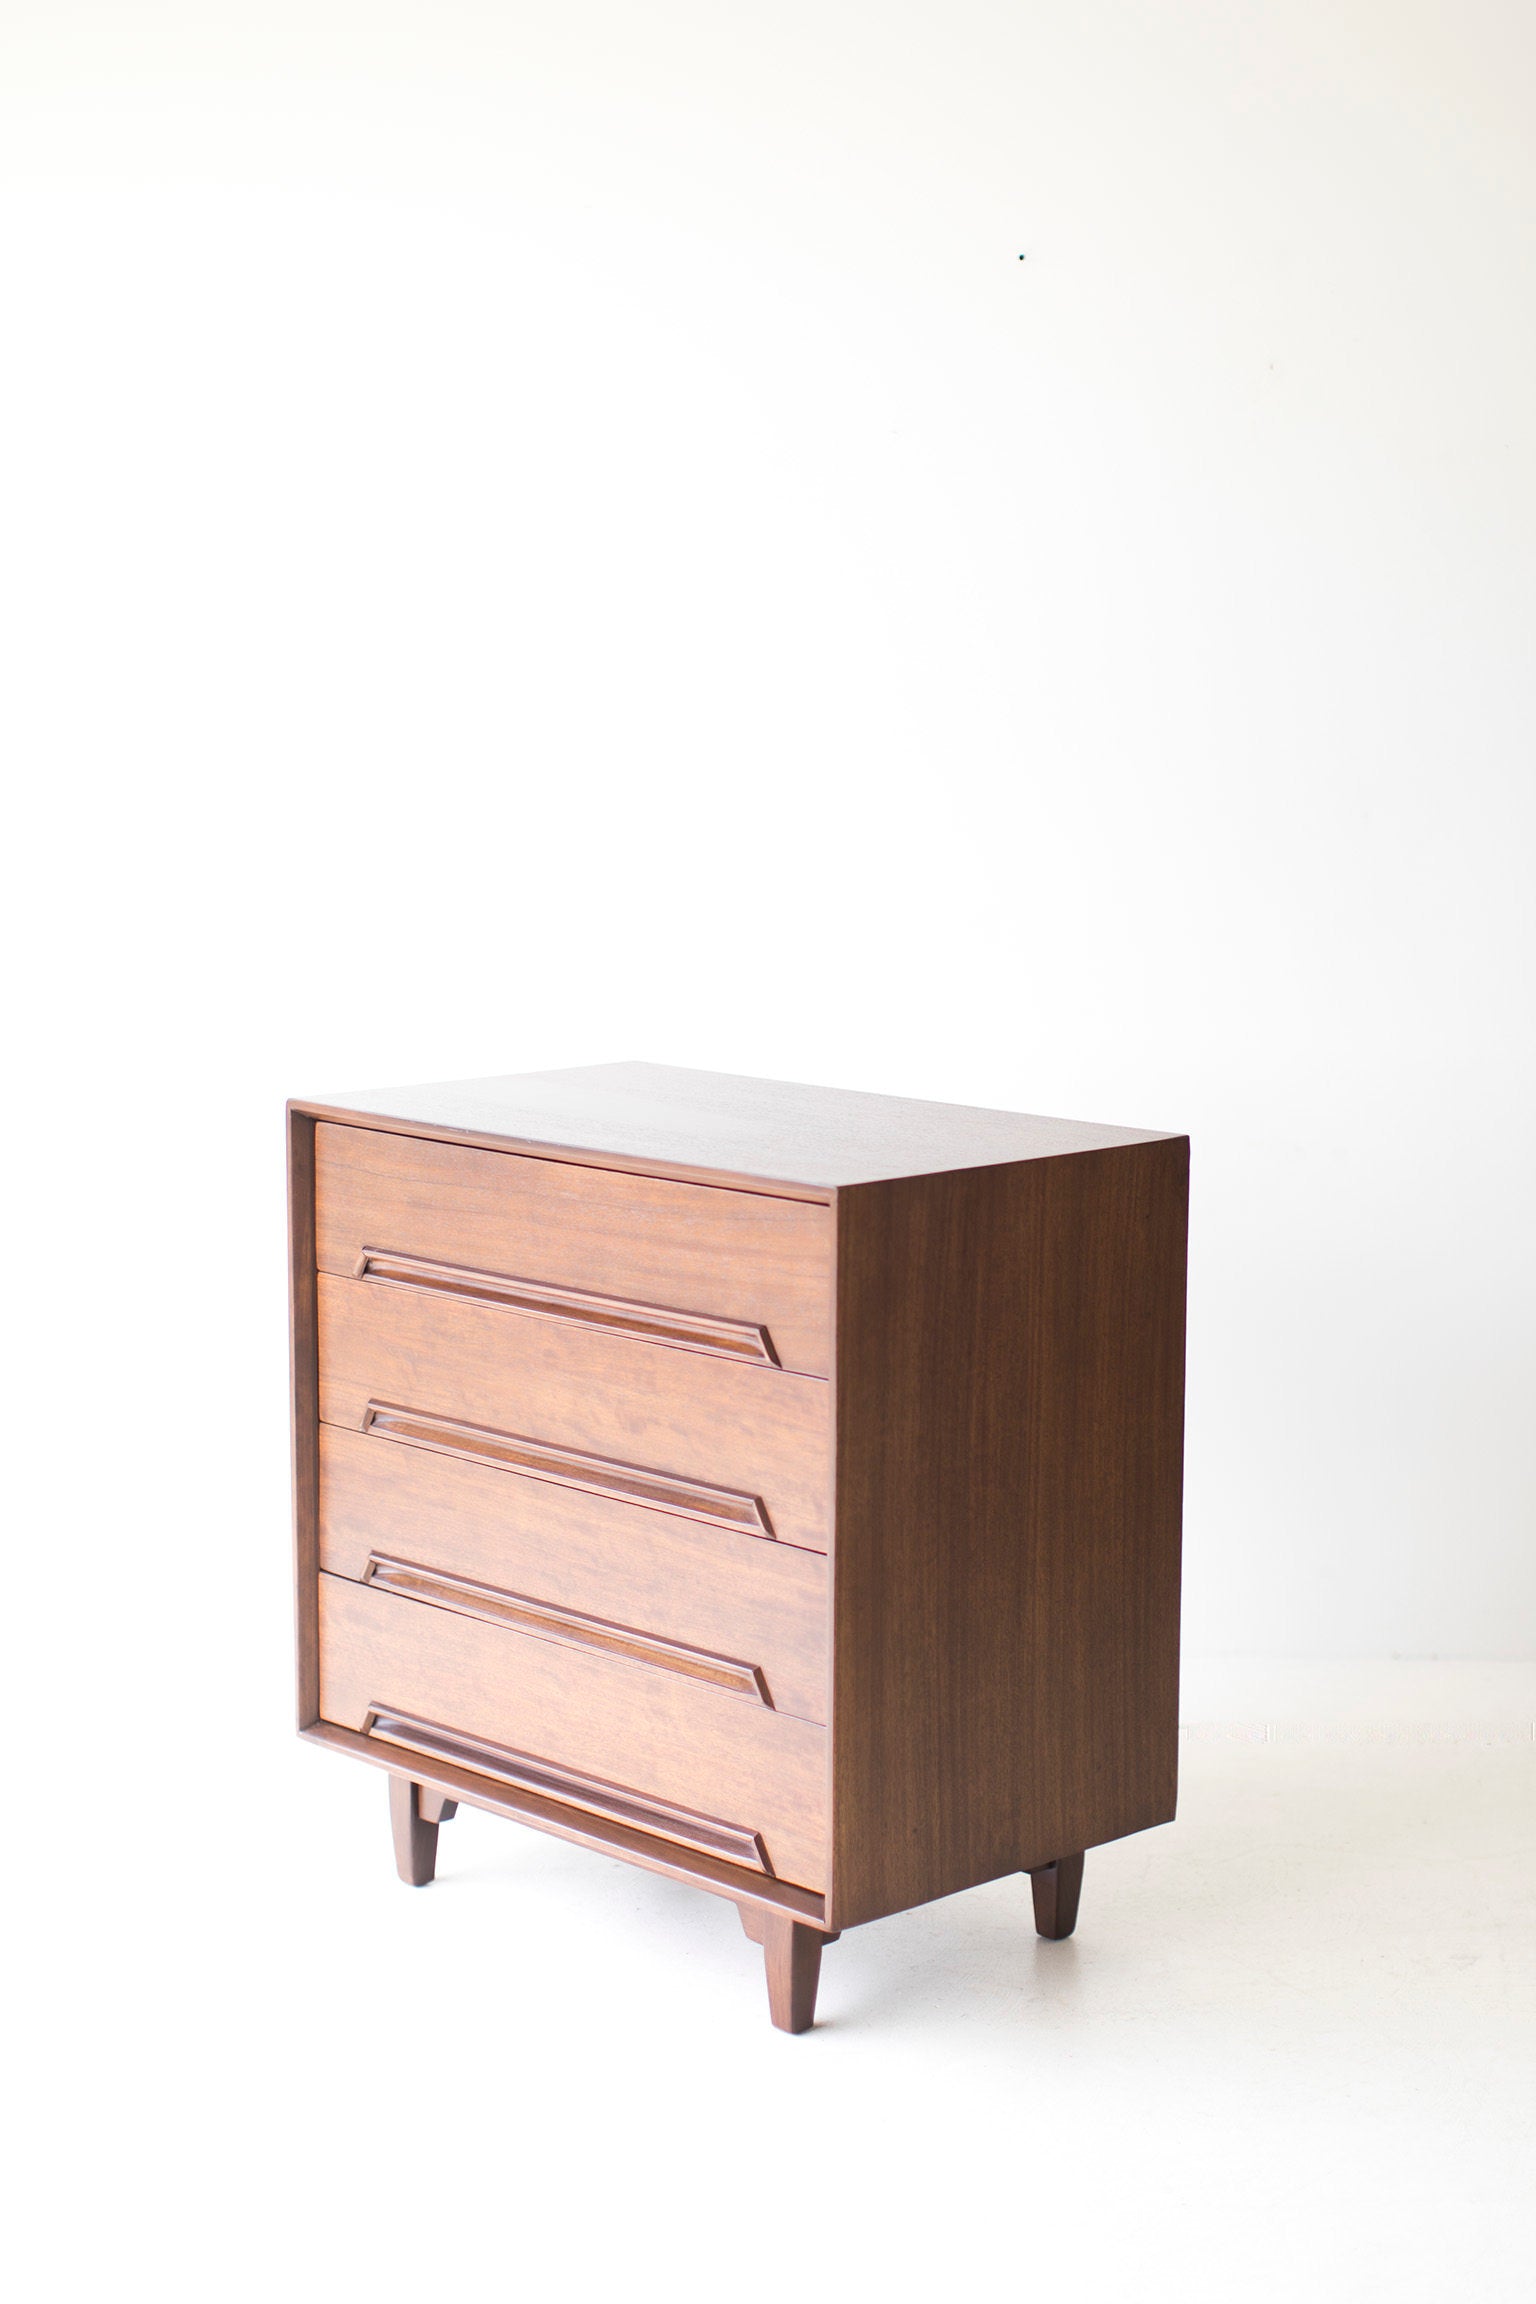 Milo Baughman Dresser for Drexel - 09261701